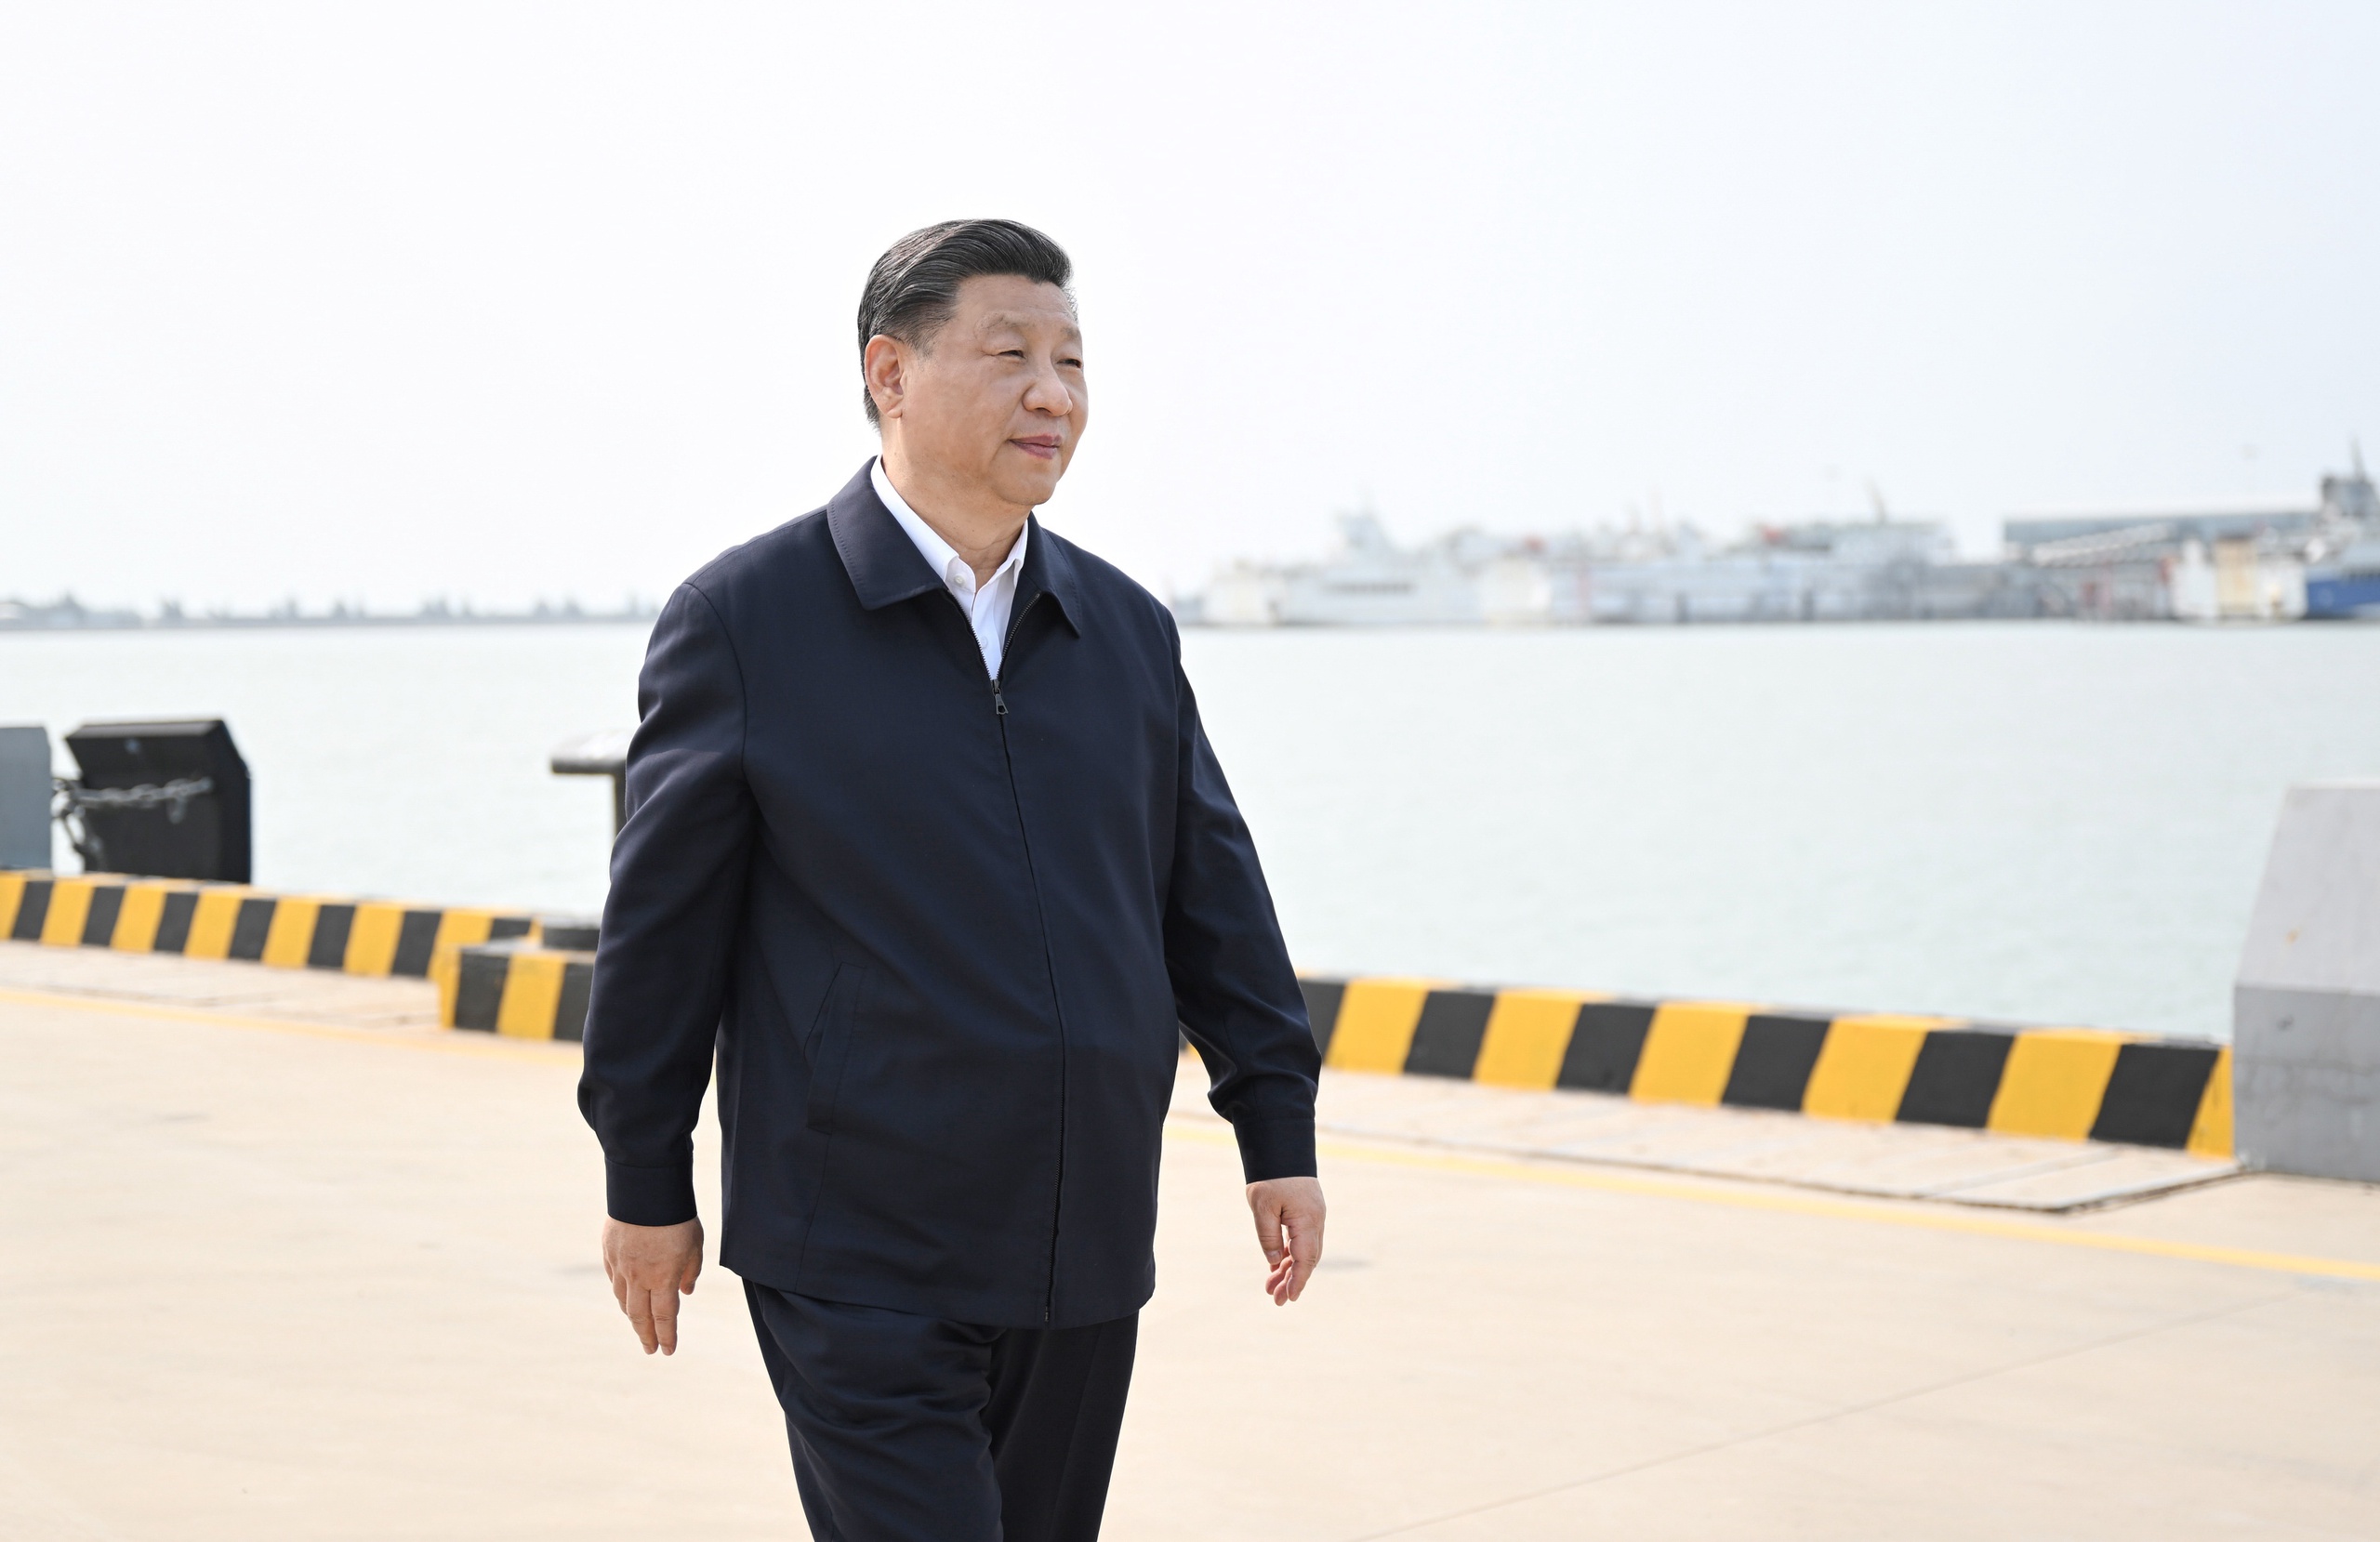 Volgens Chinese media benadrukte Xi dat de crisis een grote invloed heeft op de wereld en dat Beijing altijd voor vrede is geweest. Xi dringt aan op een zo snel mogelijke wapenstilstand en het houden van vredesonderhandelingen. China zal binnenkort een speciaal gezant naar Oekraïne sturen om met alle partijen te praten over een oplossing.